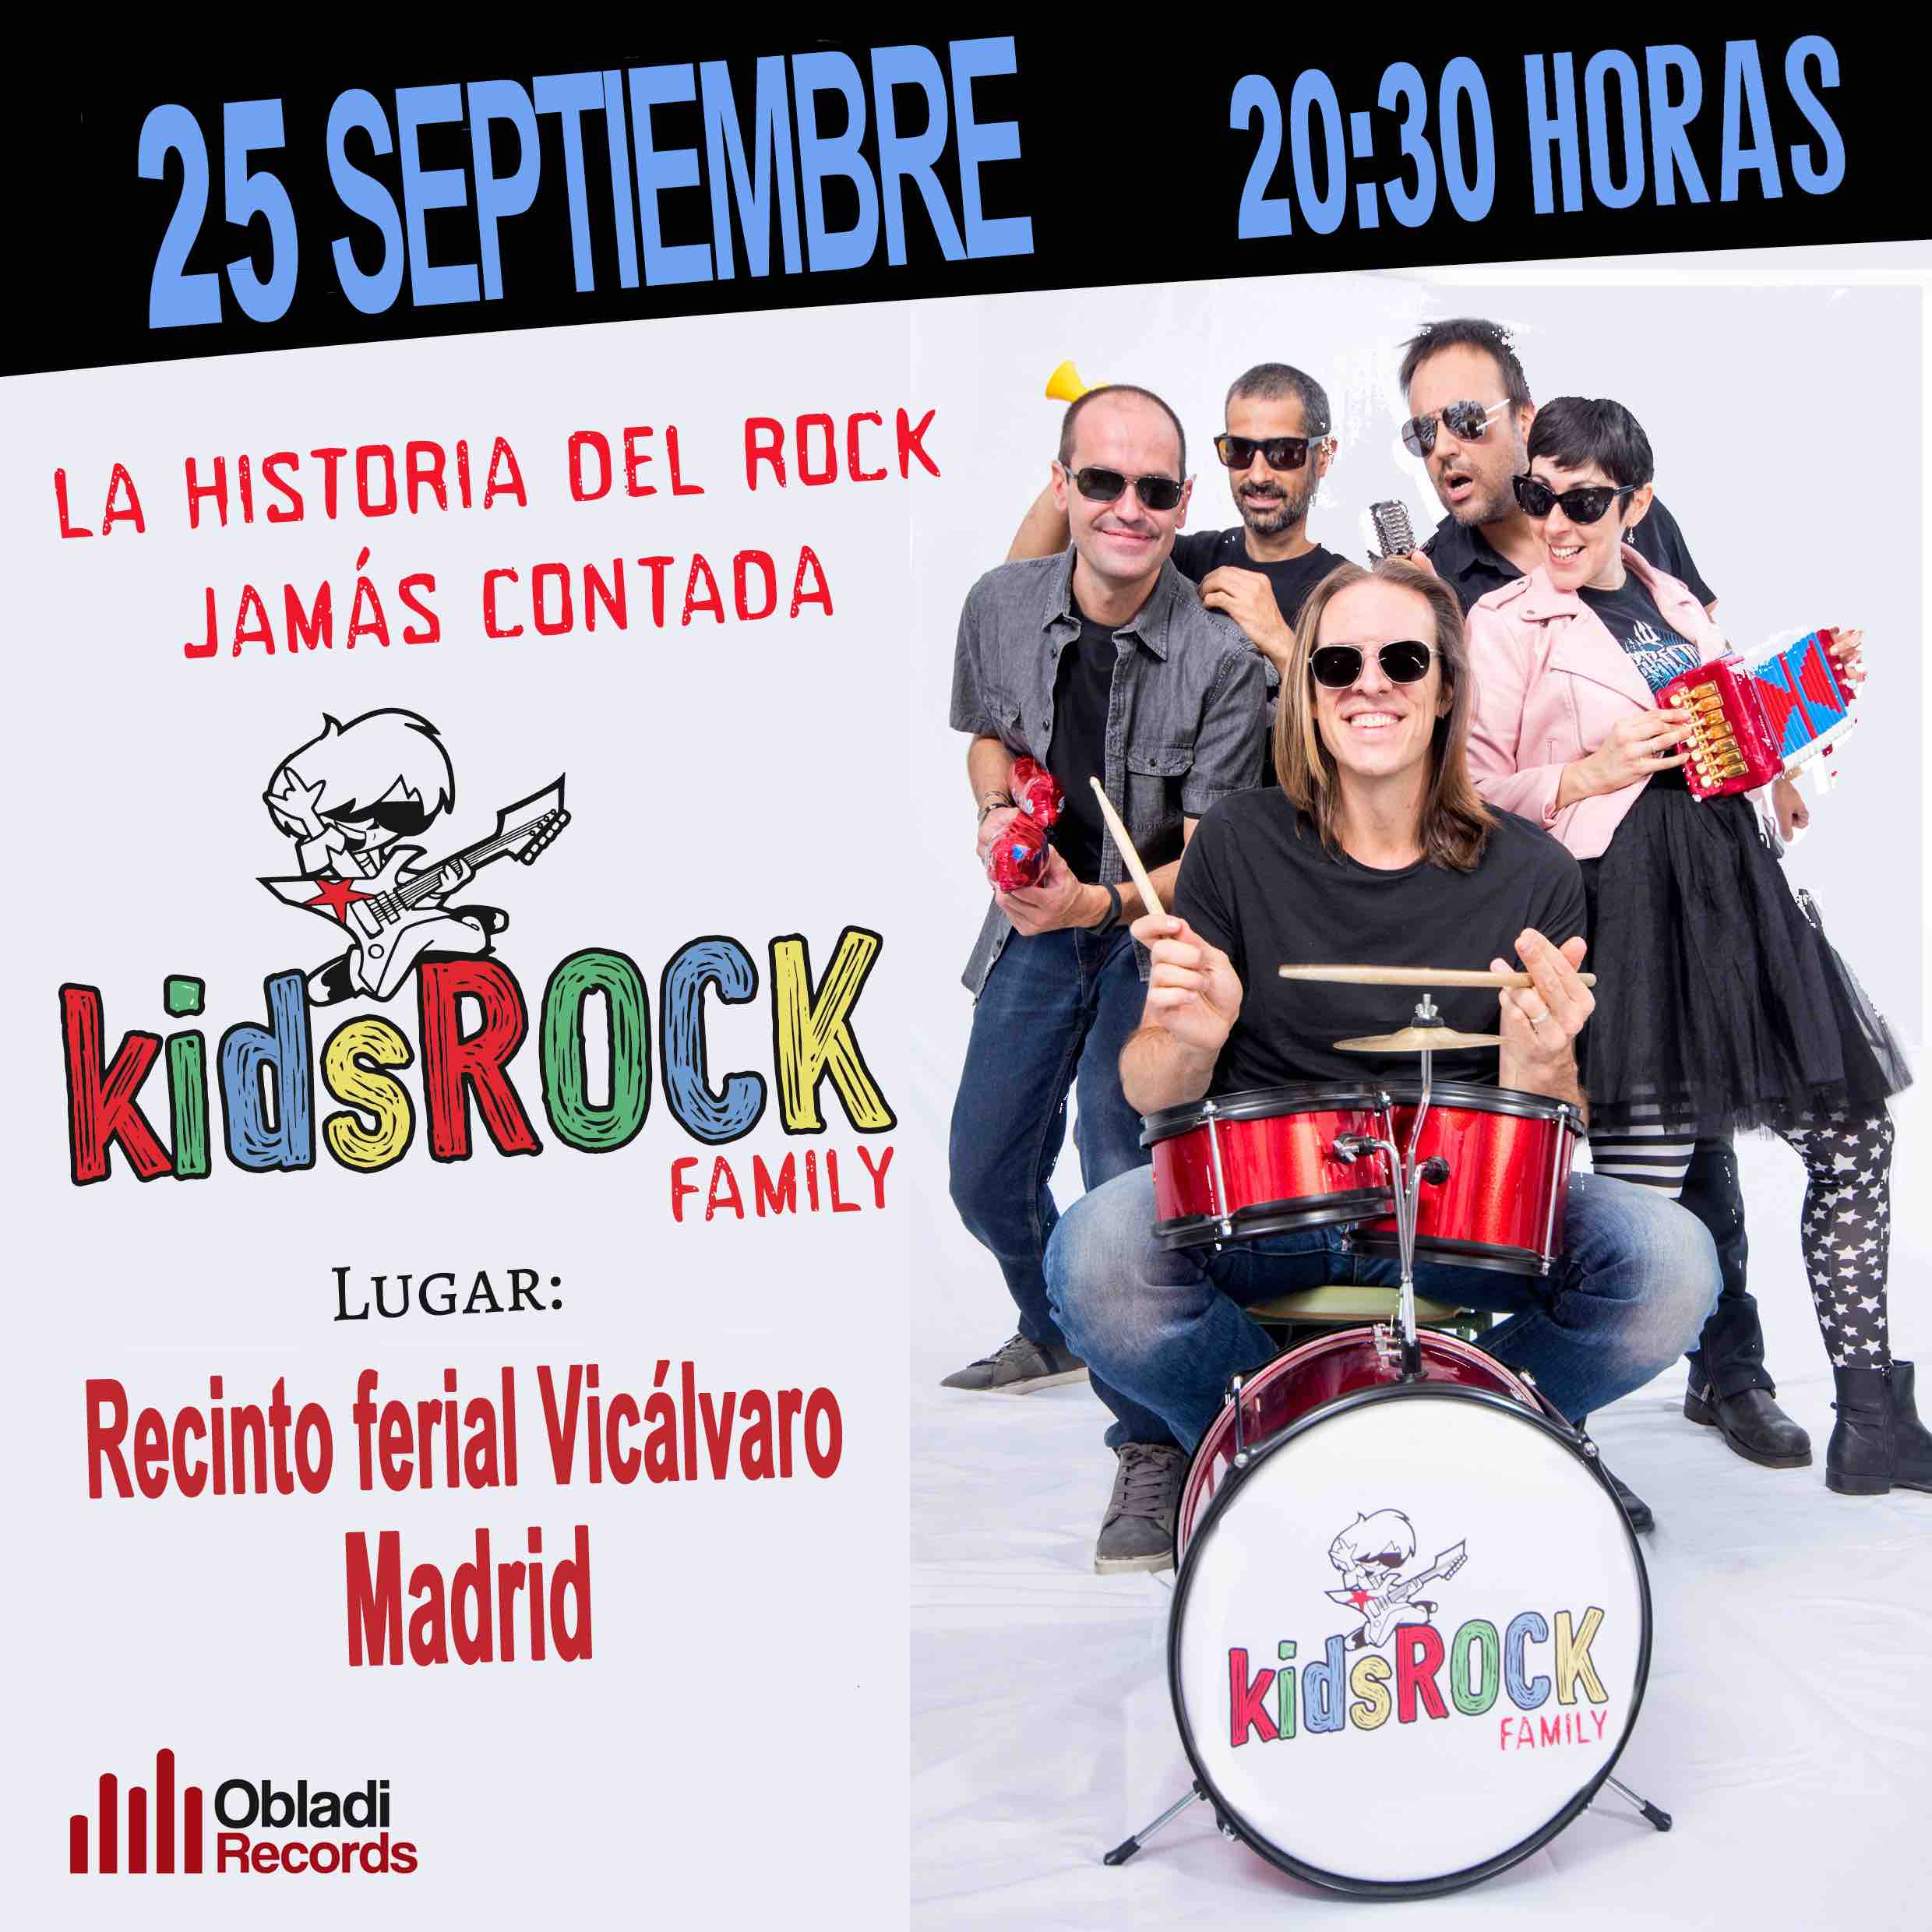 Kids Rock Family "Por todos los rincones de Madrid...por todas partes